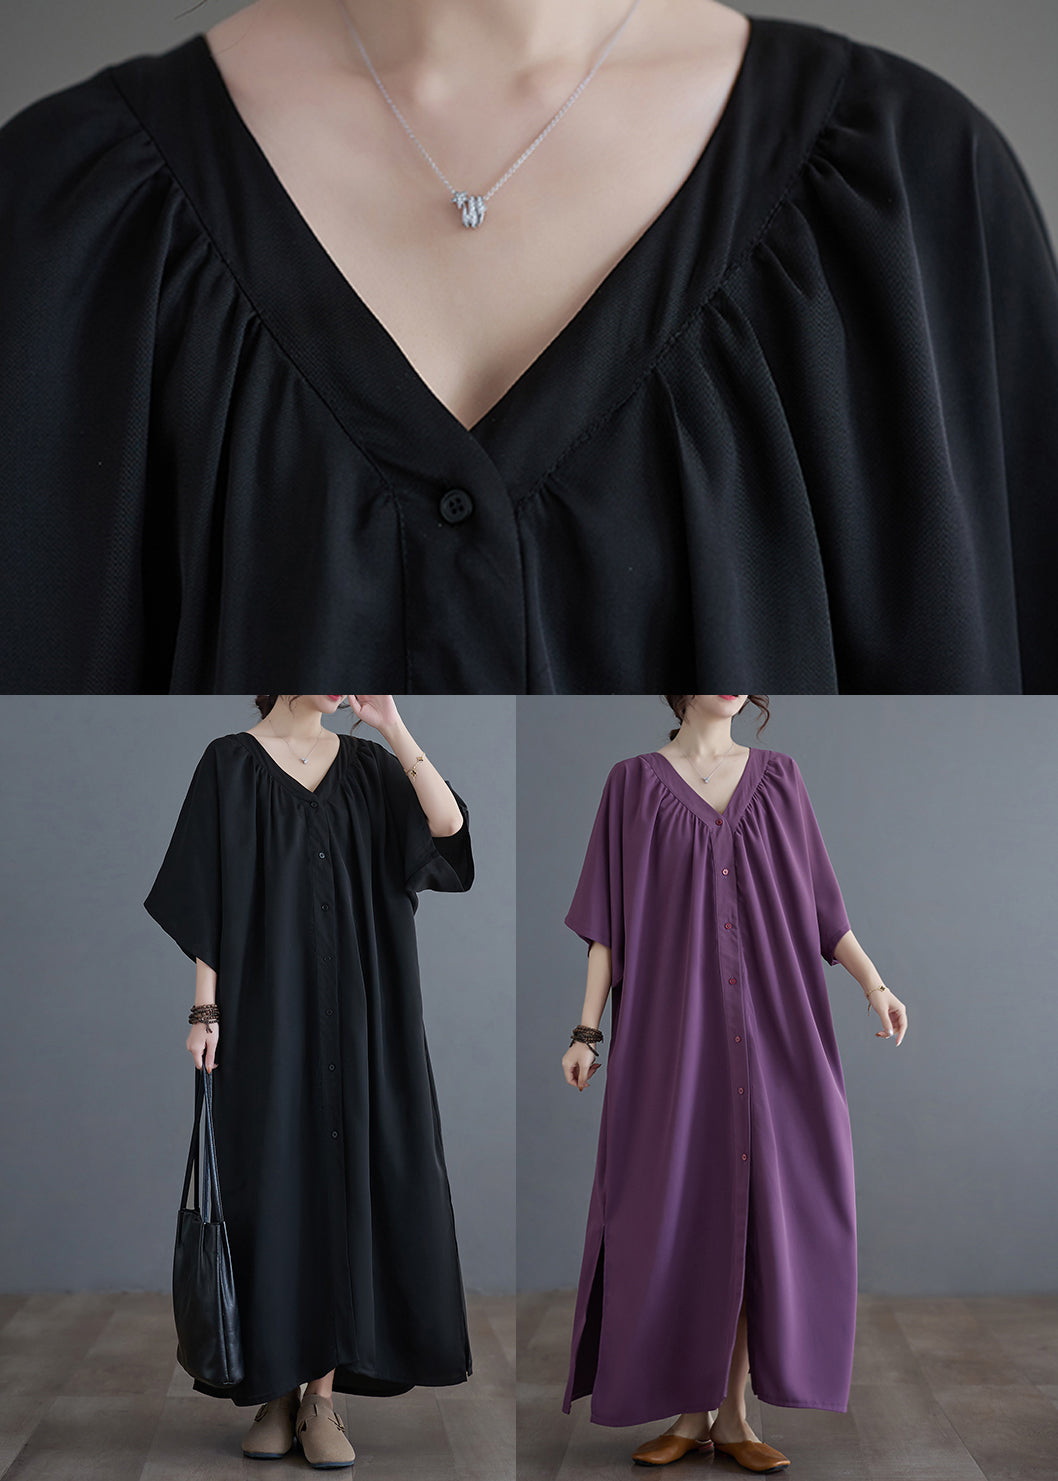 Purple Side Open Long Dresses Short Sleeve